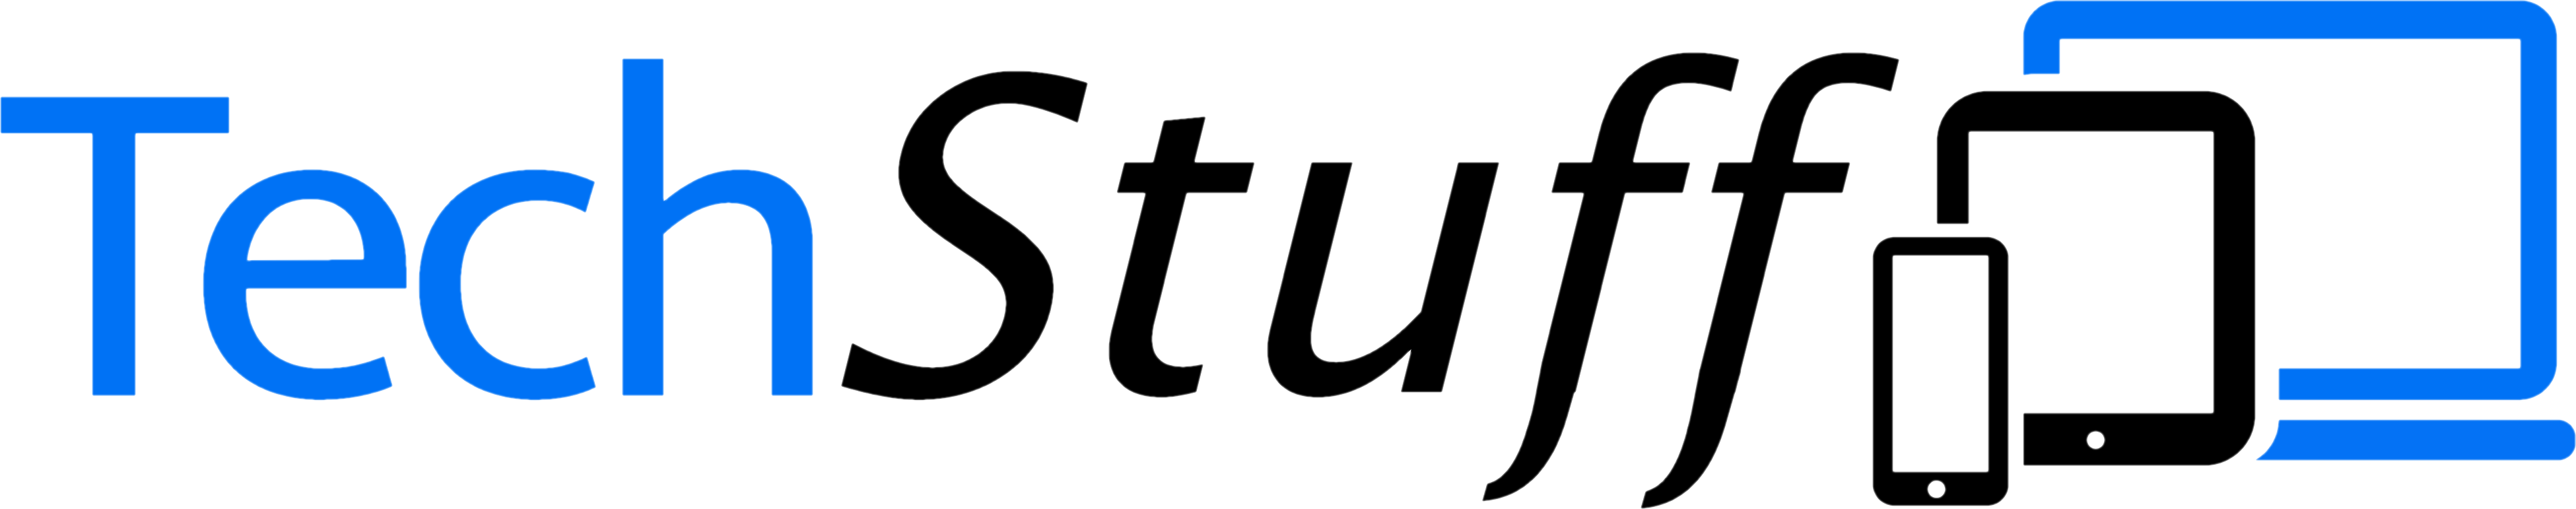 TechStuff Logo